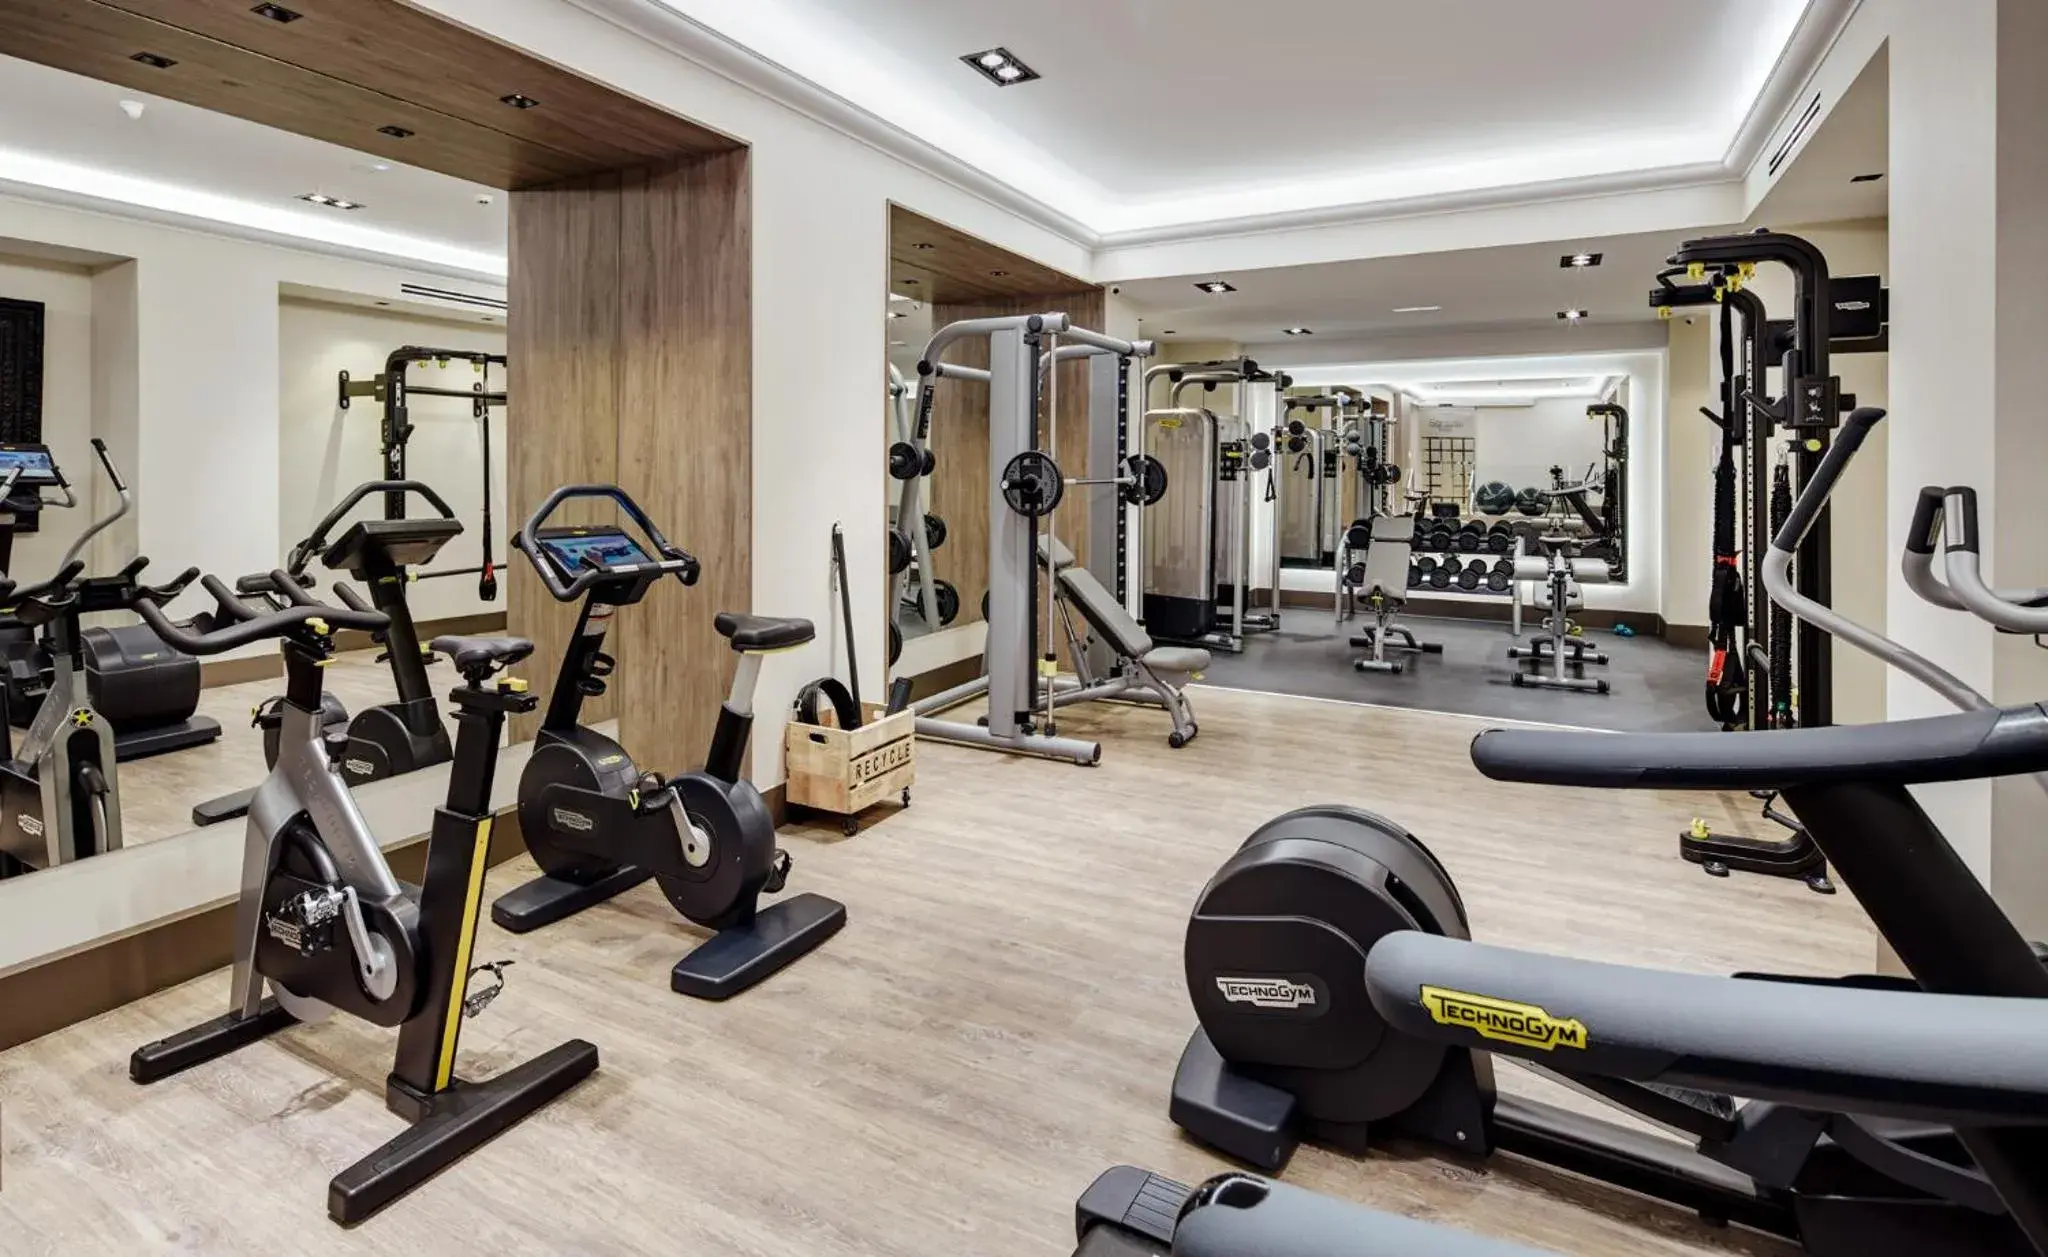 Fitness centre/facilities, Fitness Center/Facilities in Sercotel Gran Hotel Conde Duque